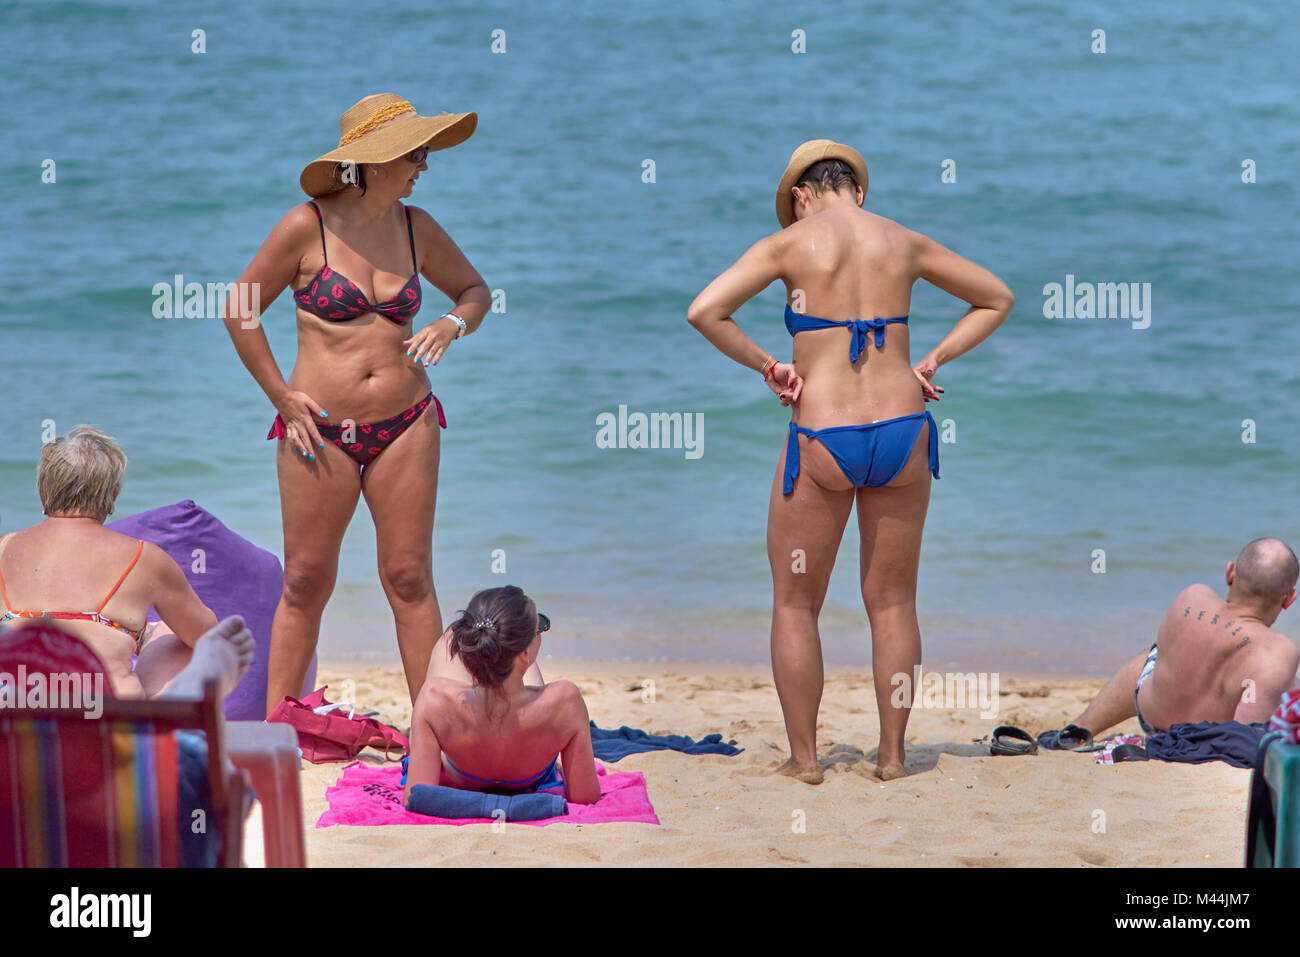 Donne in bikini in spiaggia. Pattaya Thailandia del sud-est asiatico Foto Stock